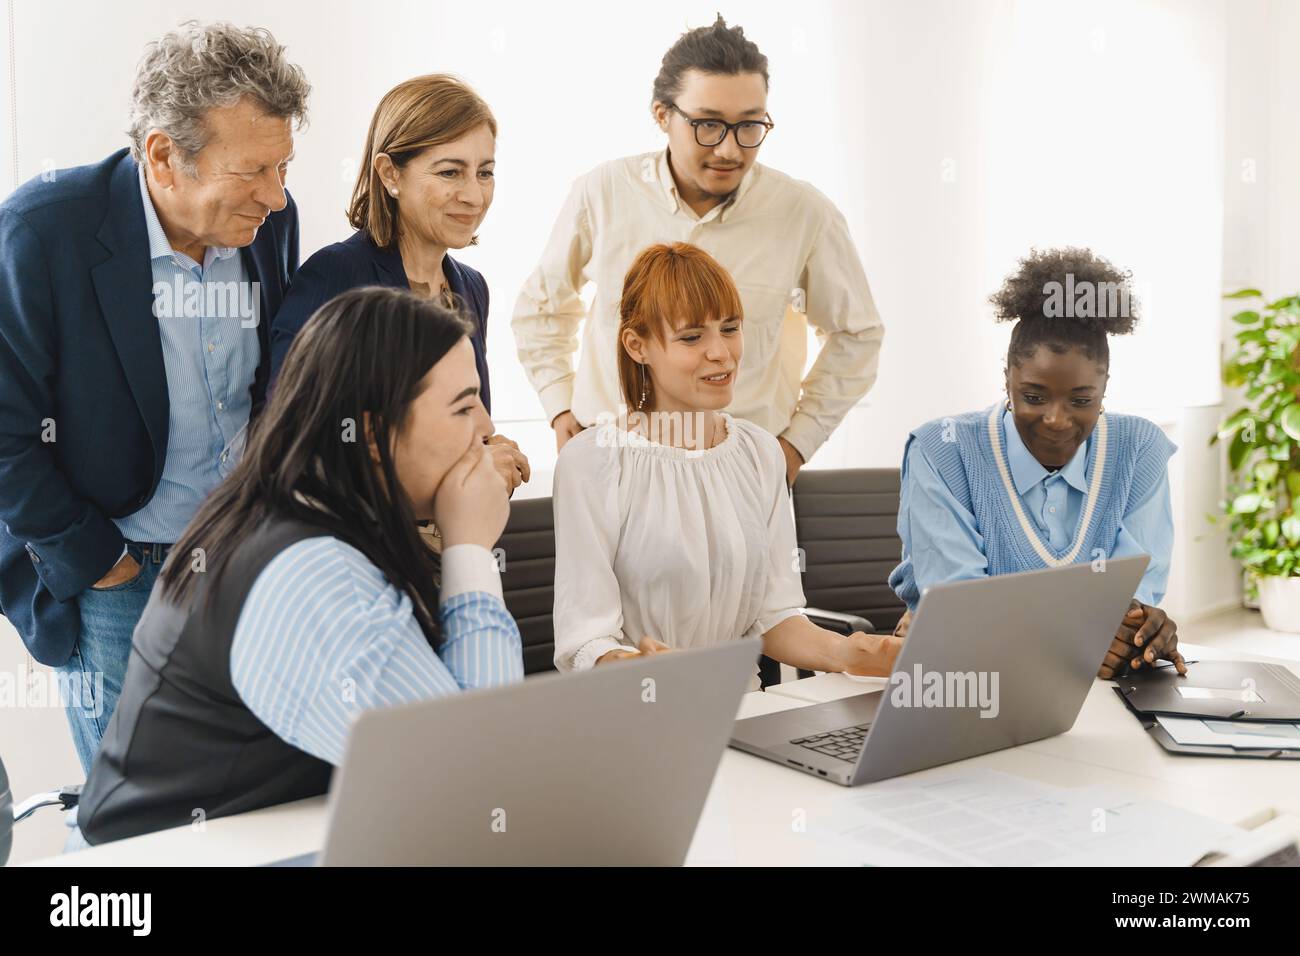 Équipe diversifiée évaluant un projet en ligne - employés engagés partageant des idées - analyse collaborative du travail numérique. Banque D'Images